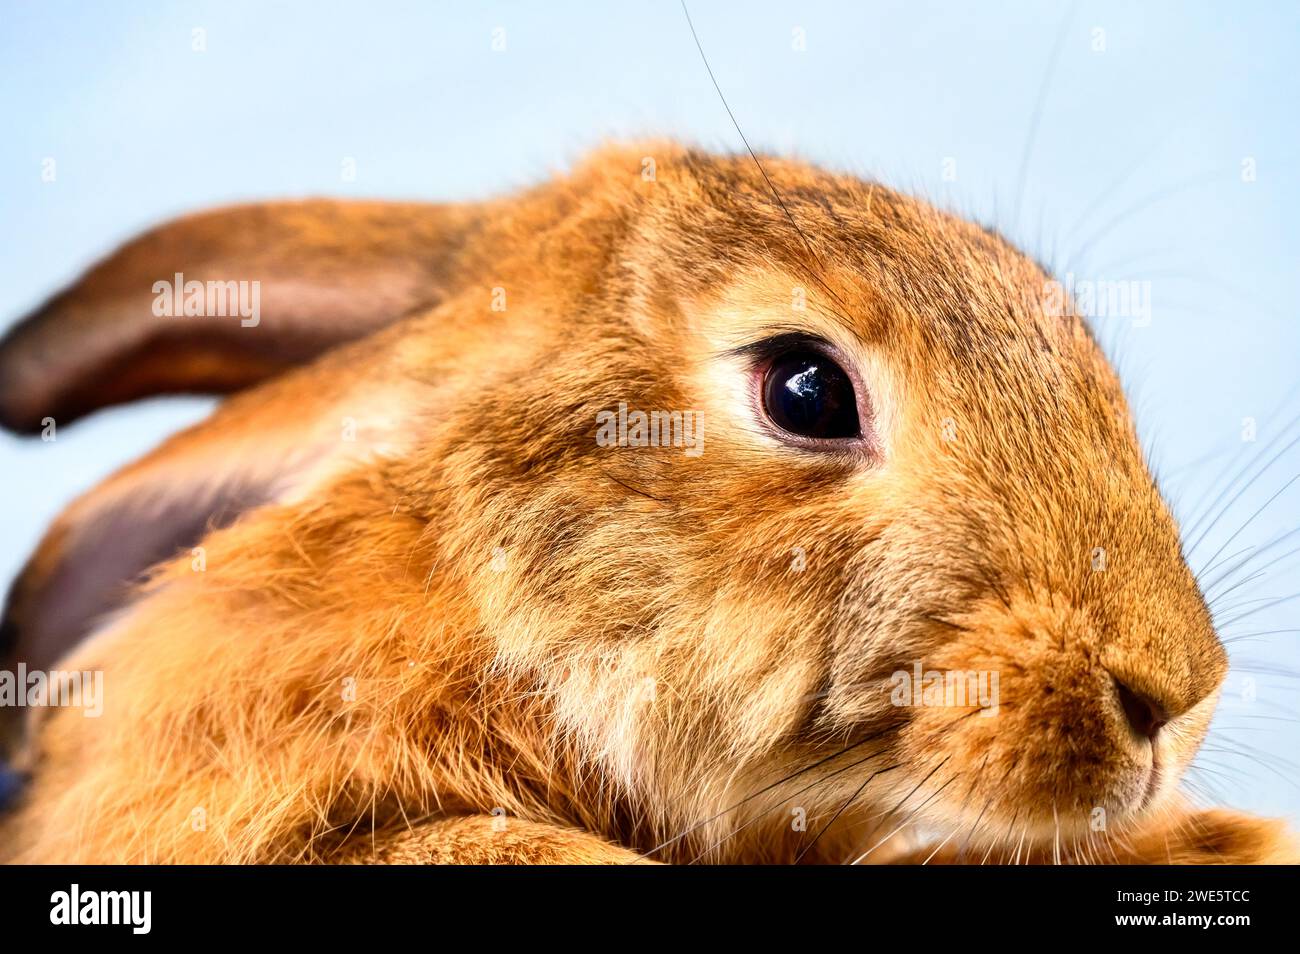 Brown rabbit or bunny pet, close-up Stock Photo